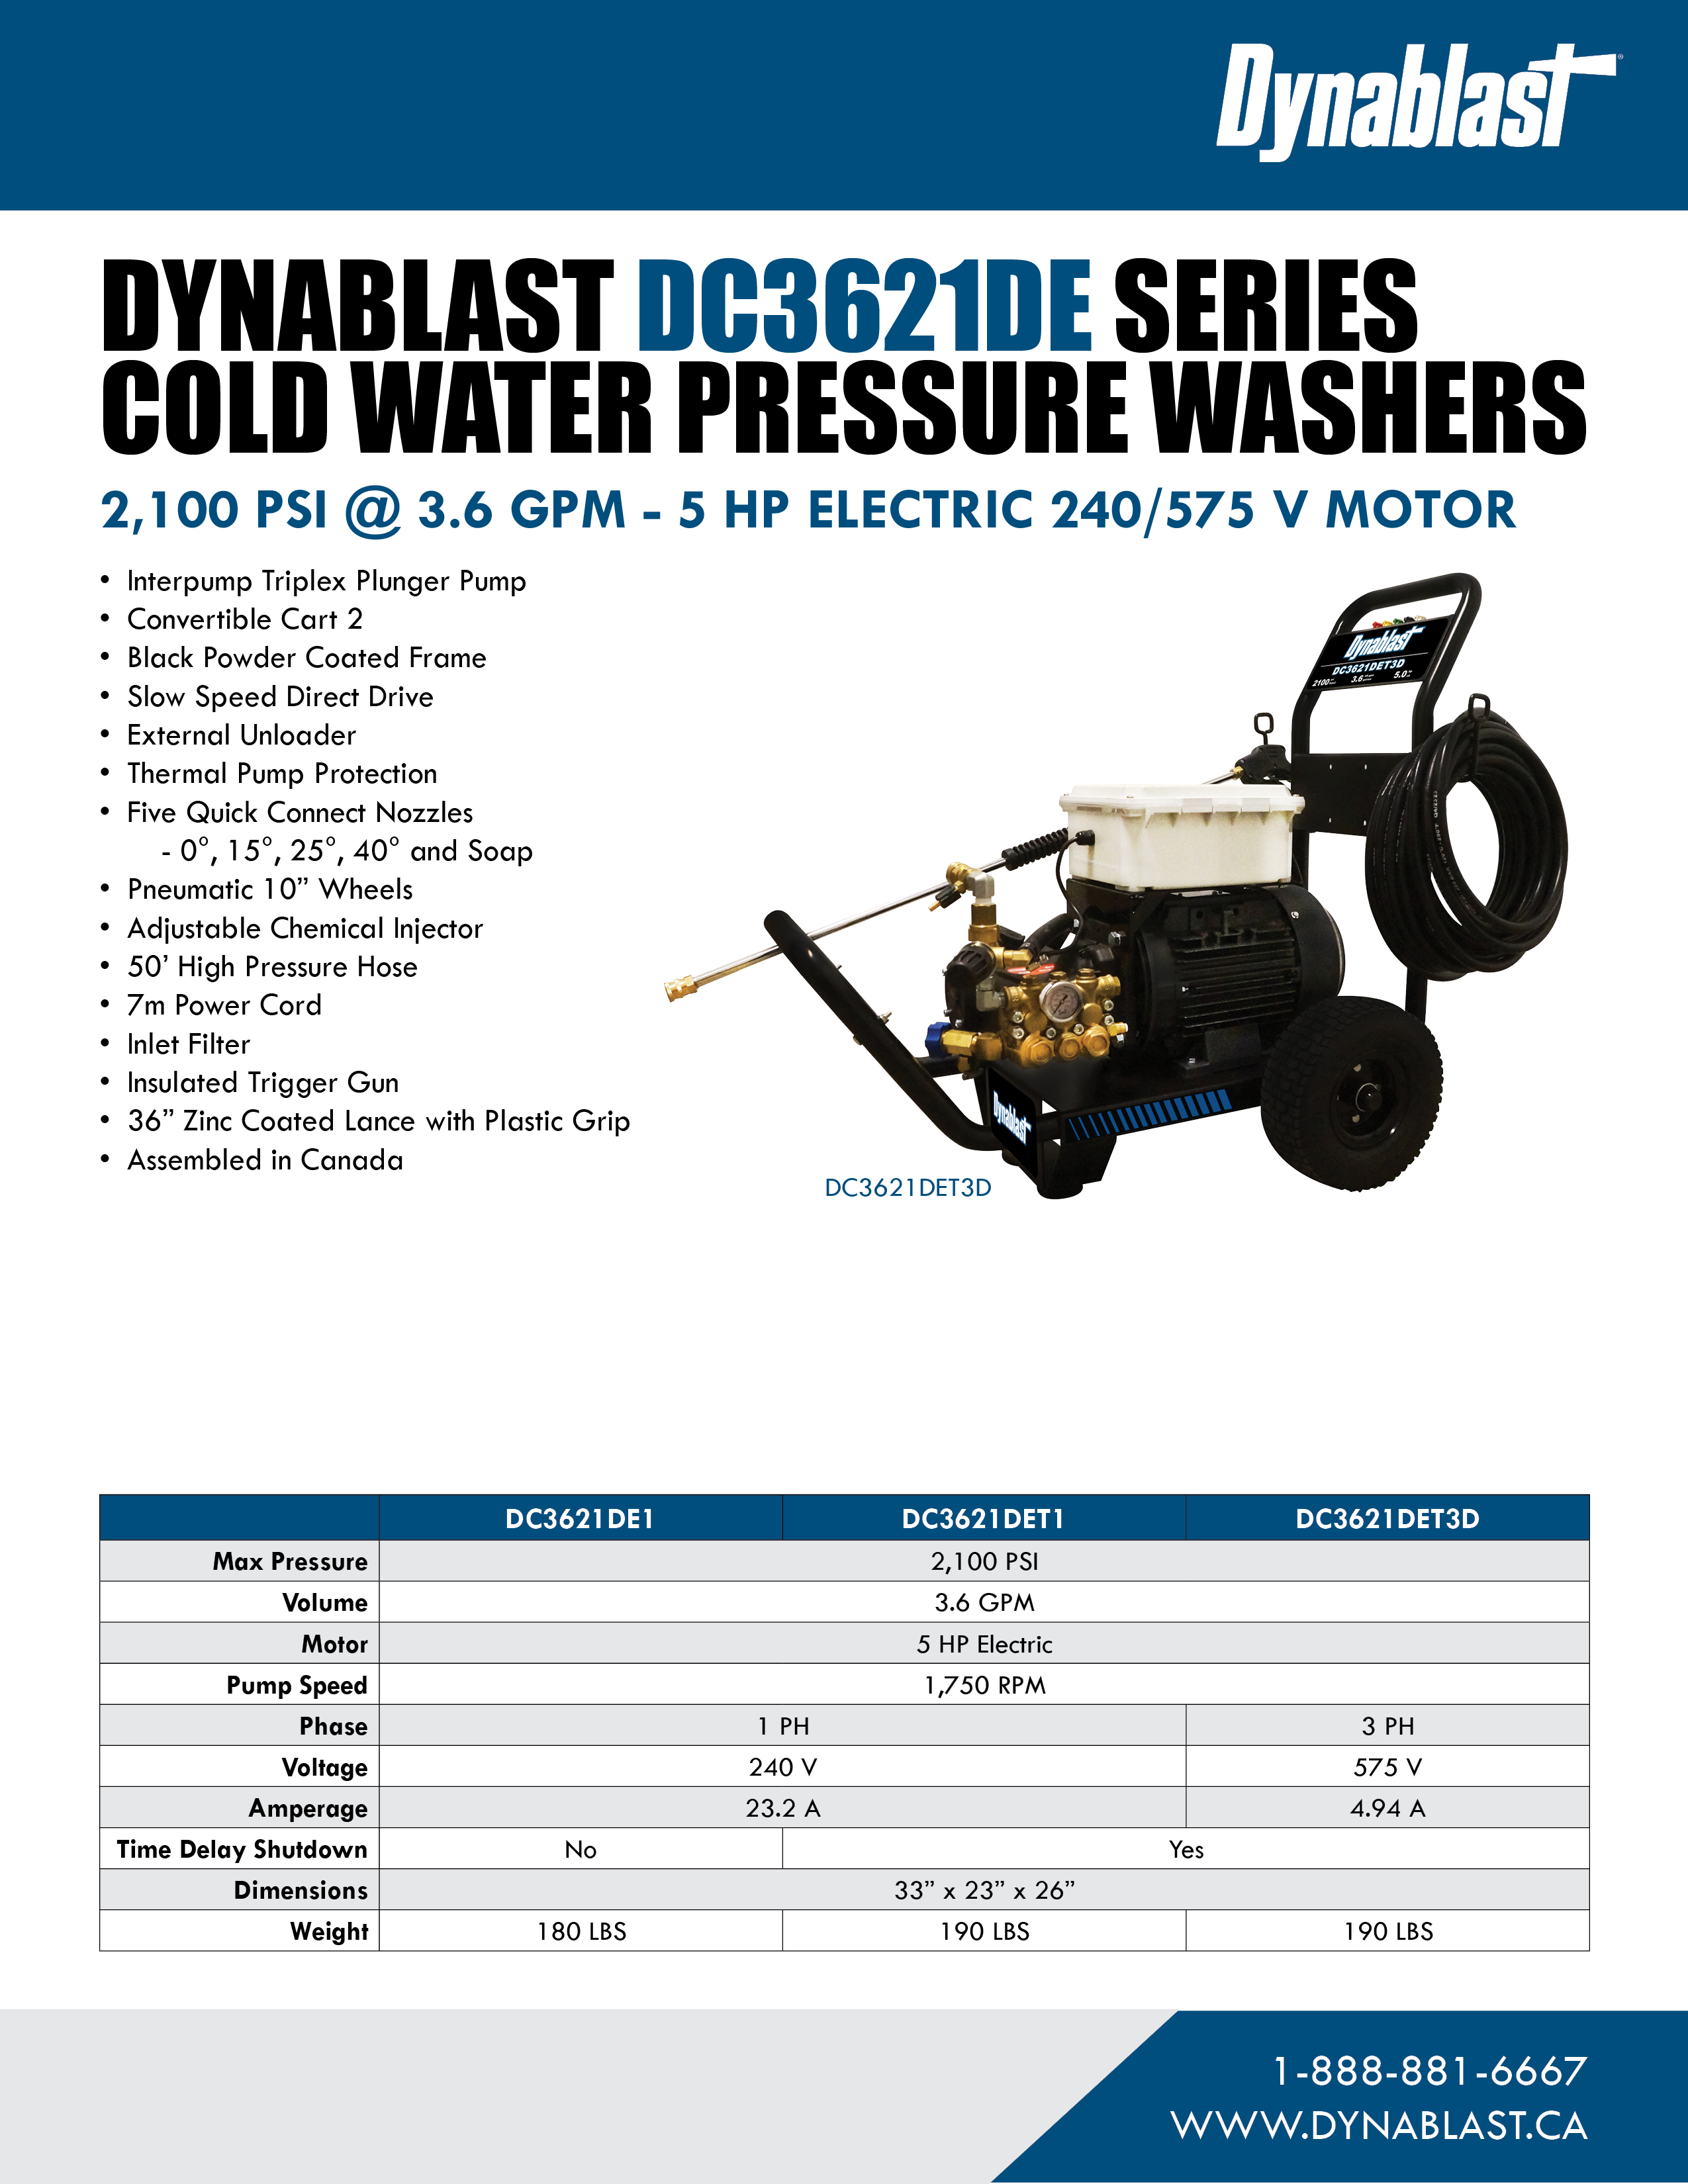 Spec Sheet - Dynablast DC3621DE Series Cold Water Pressure Washer